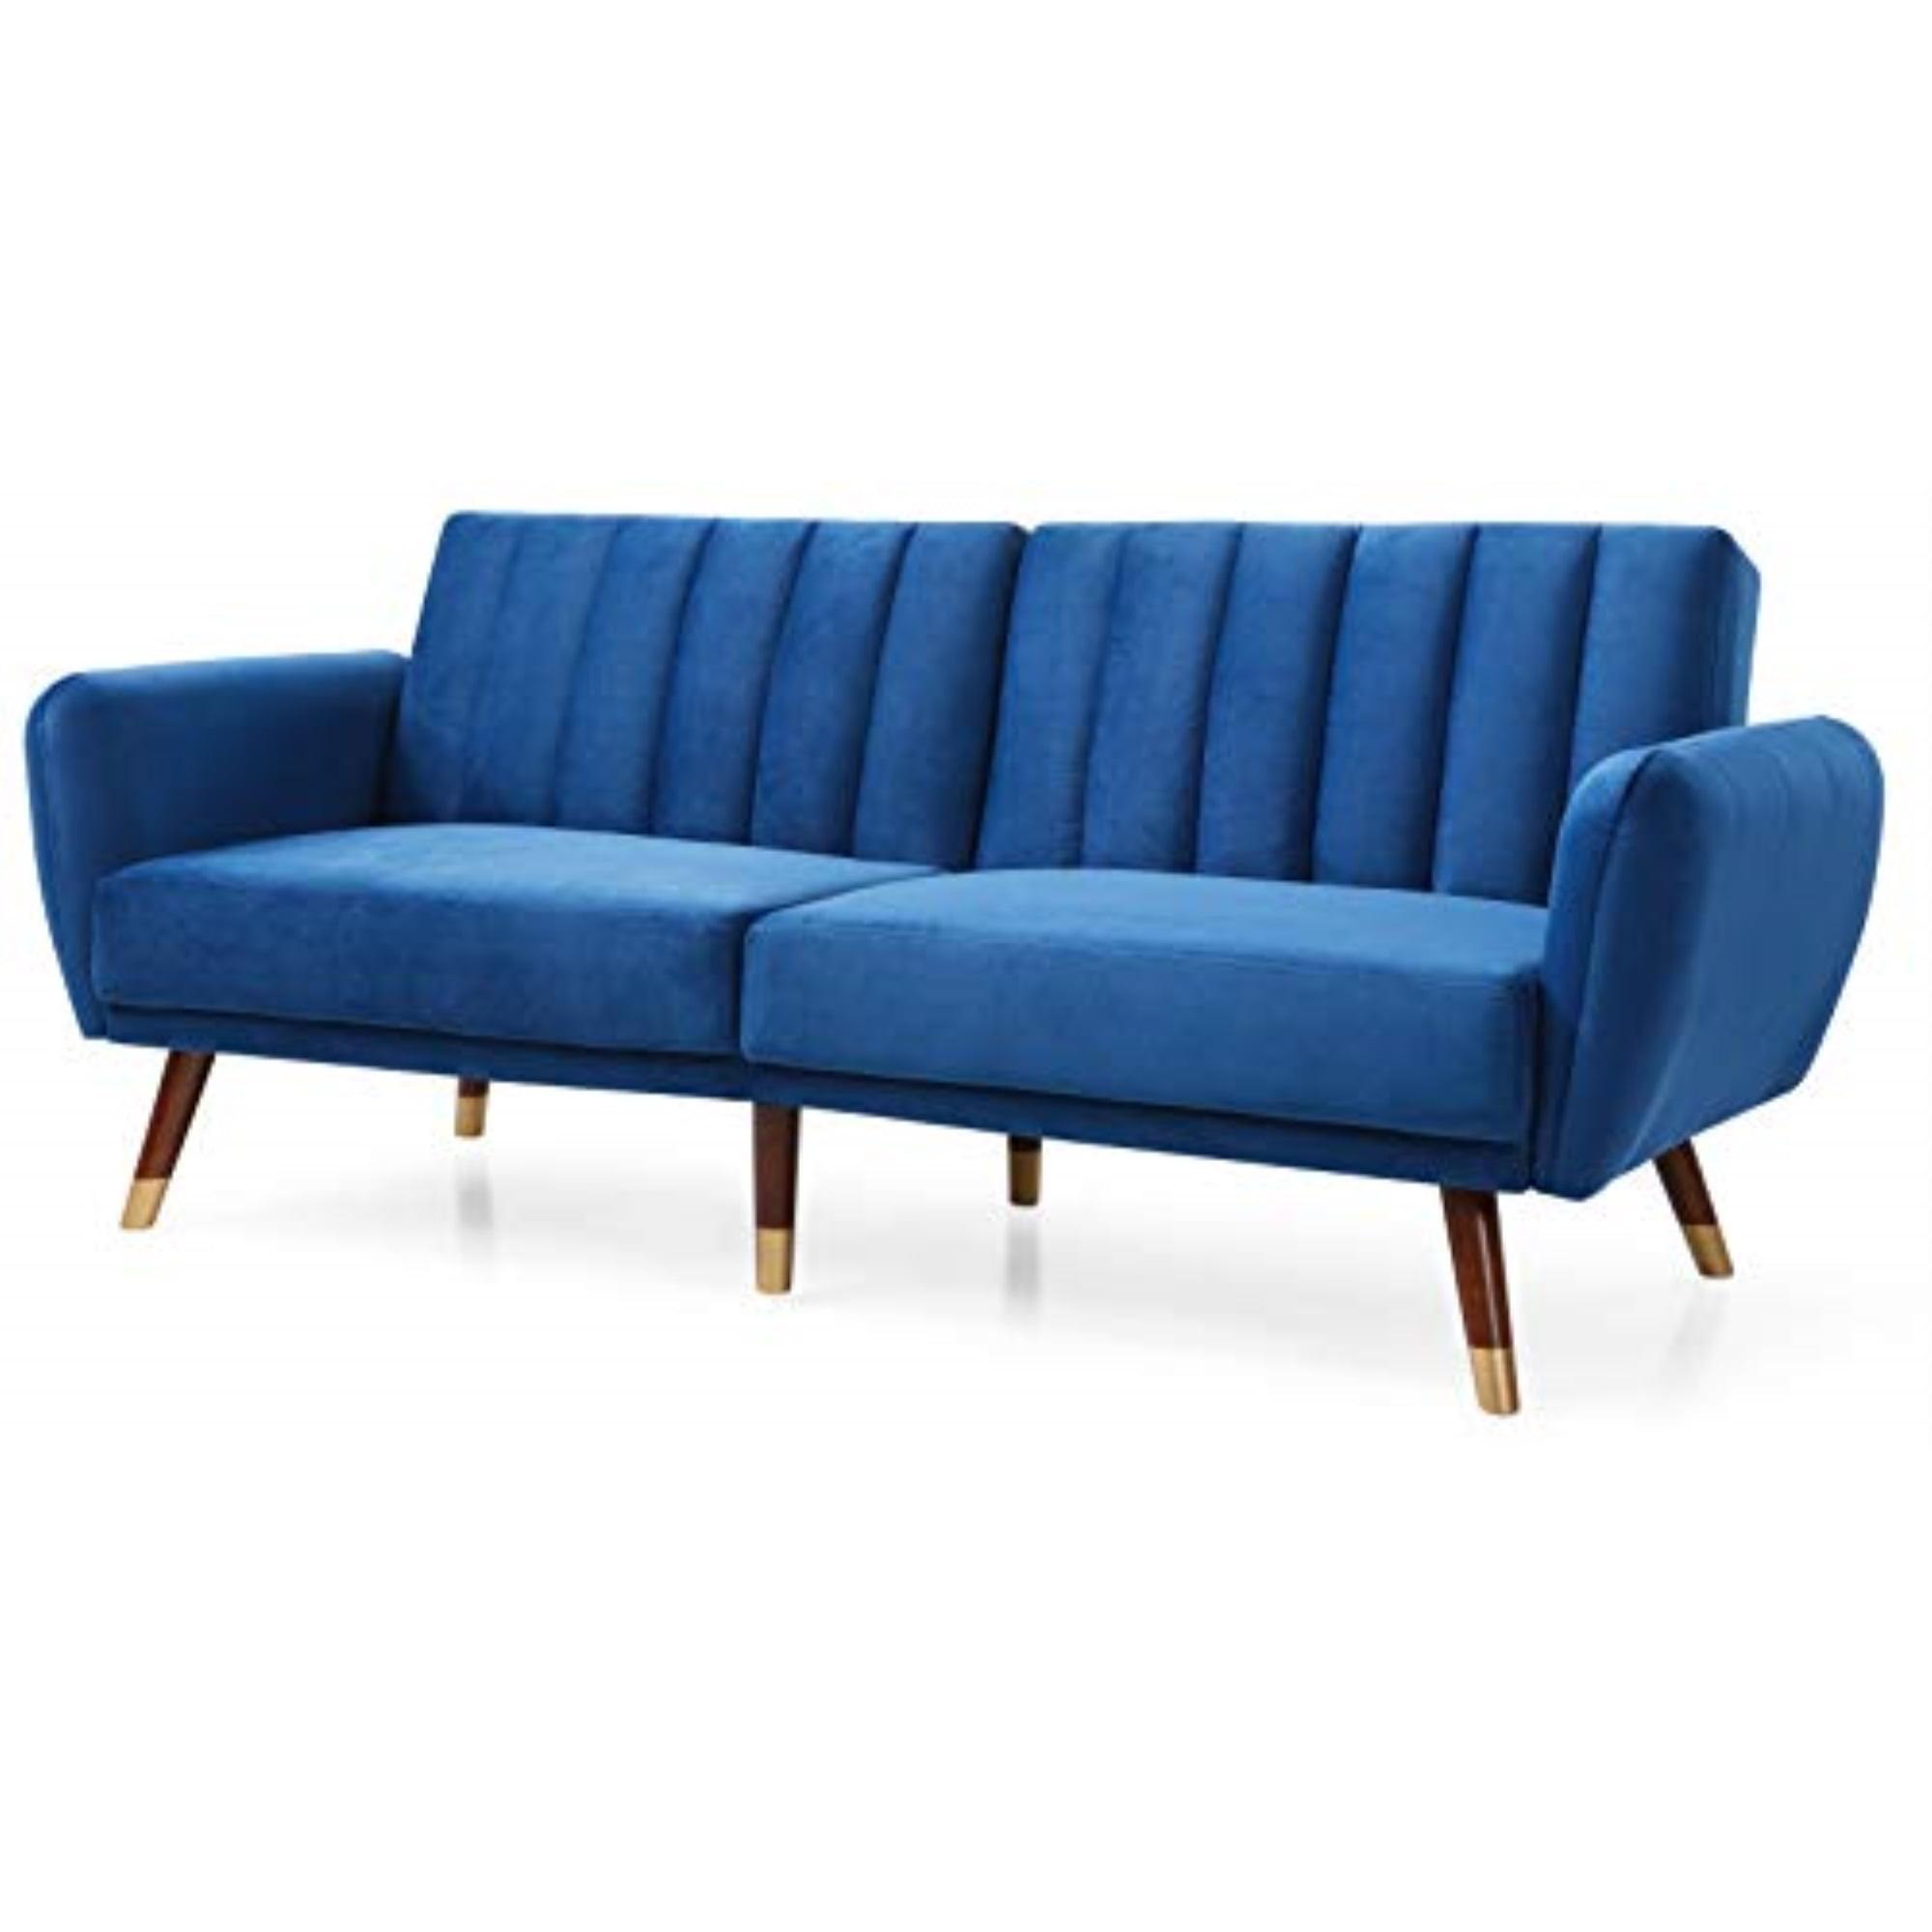 Mid-Century Plush Tufted Velvet Sleeper Sofa in Navy Blue